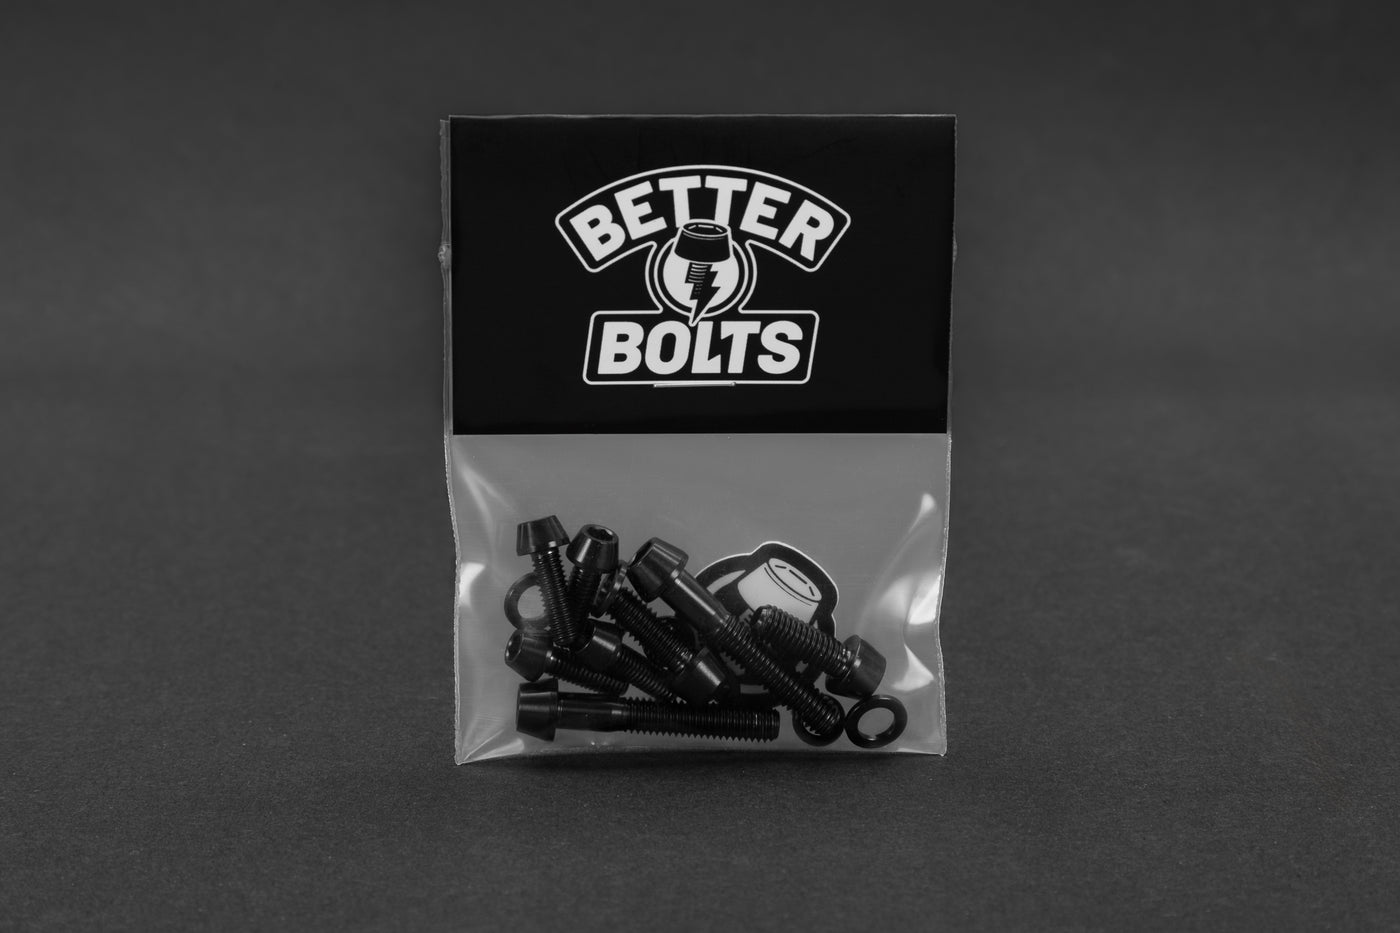 Yoshimura Stem Bolt Kit - Tapered Heads - Titanium